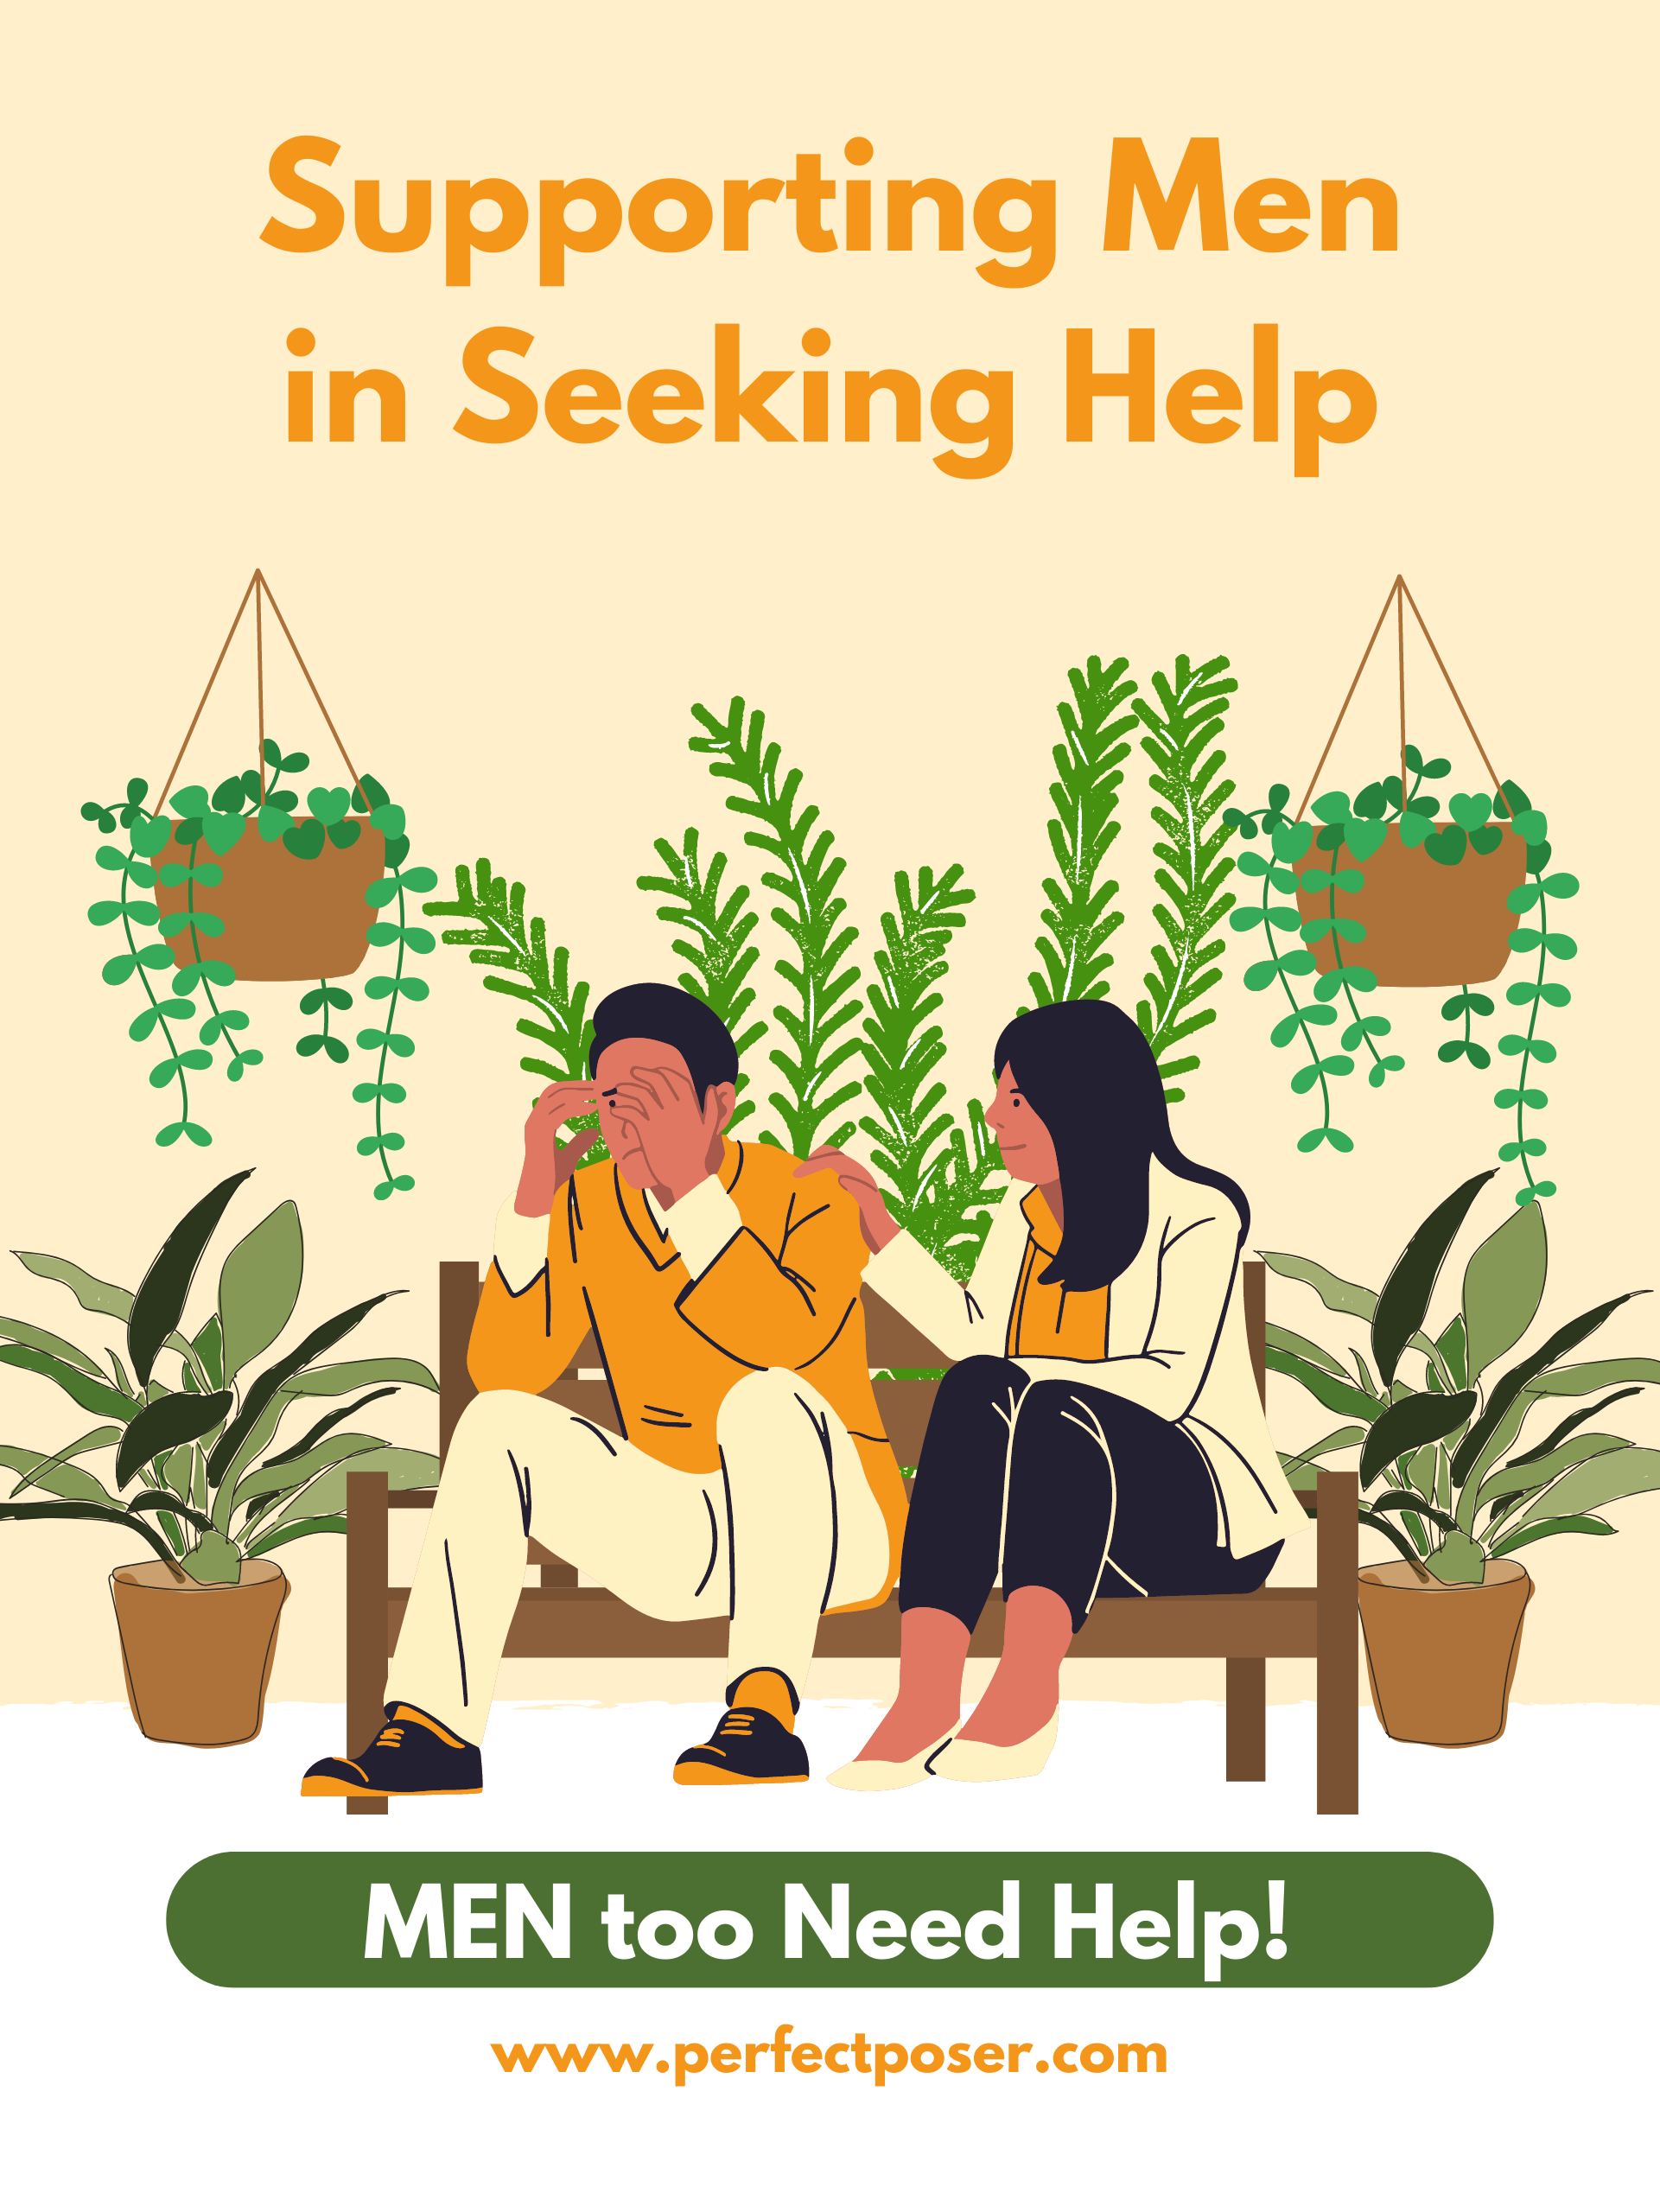 MEN too Need Help